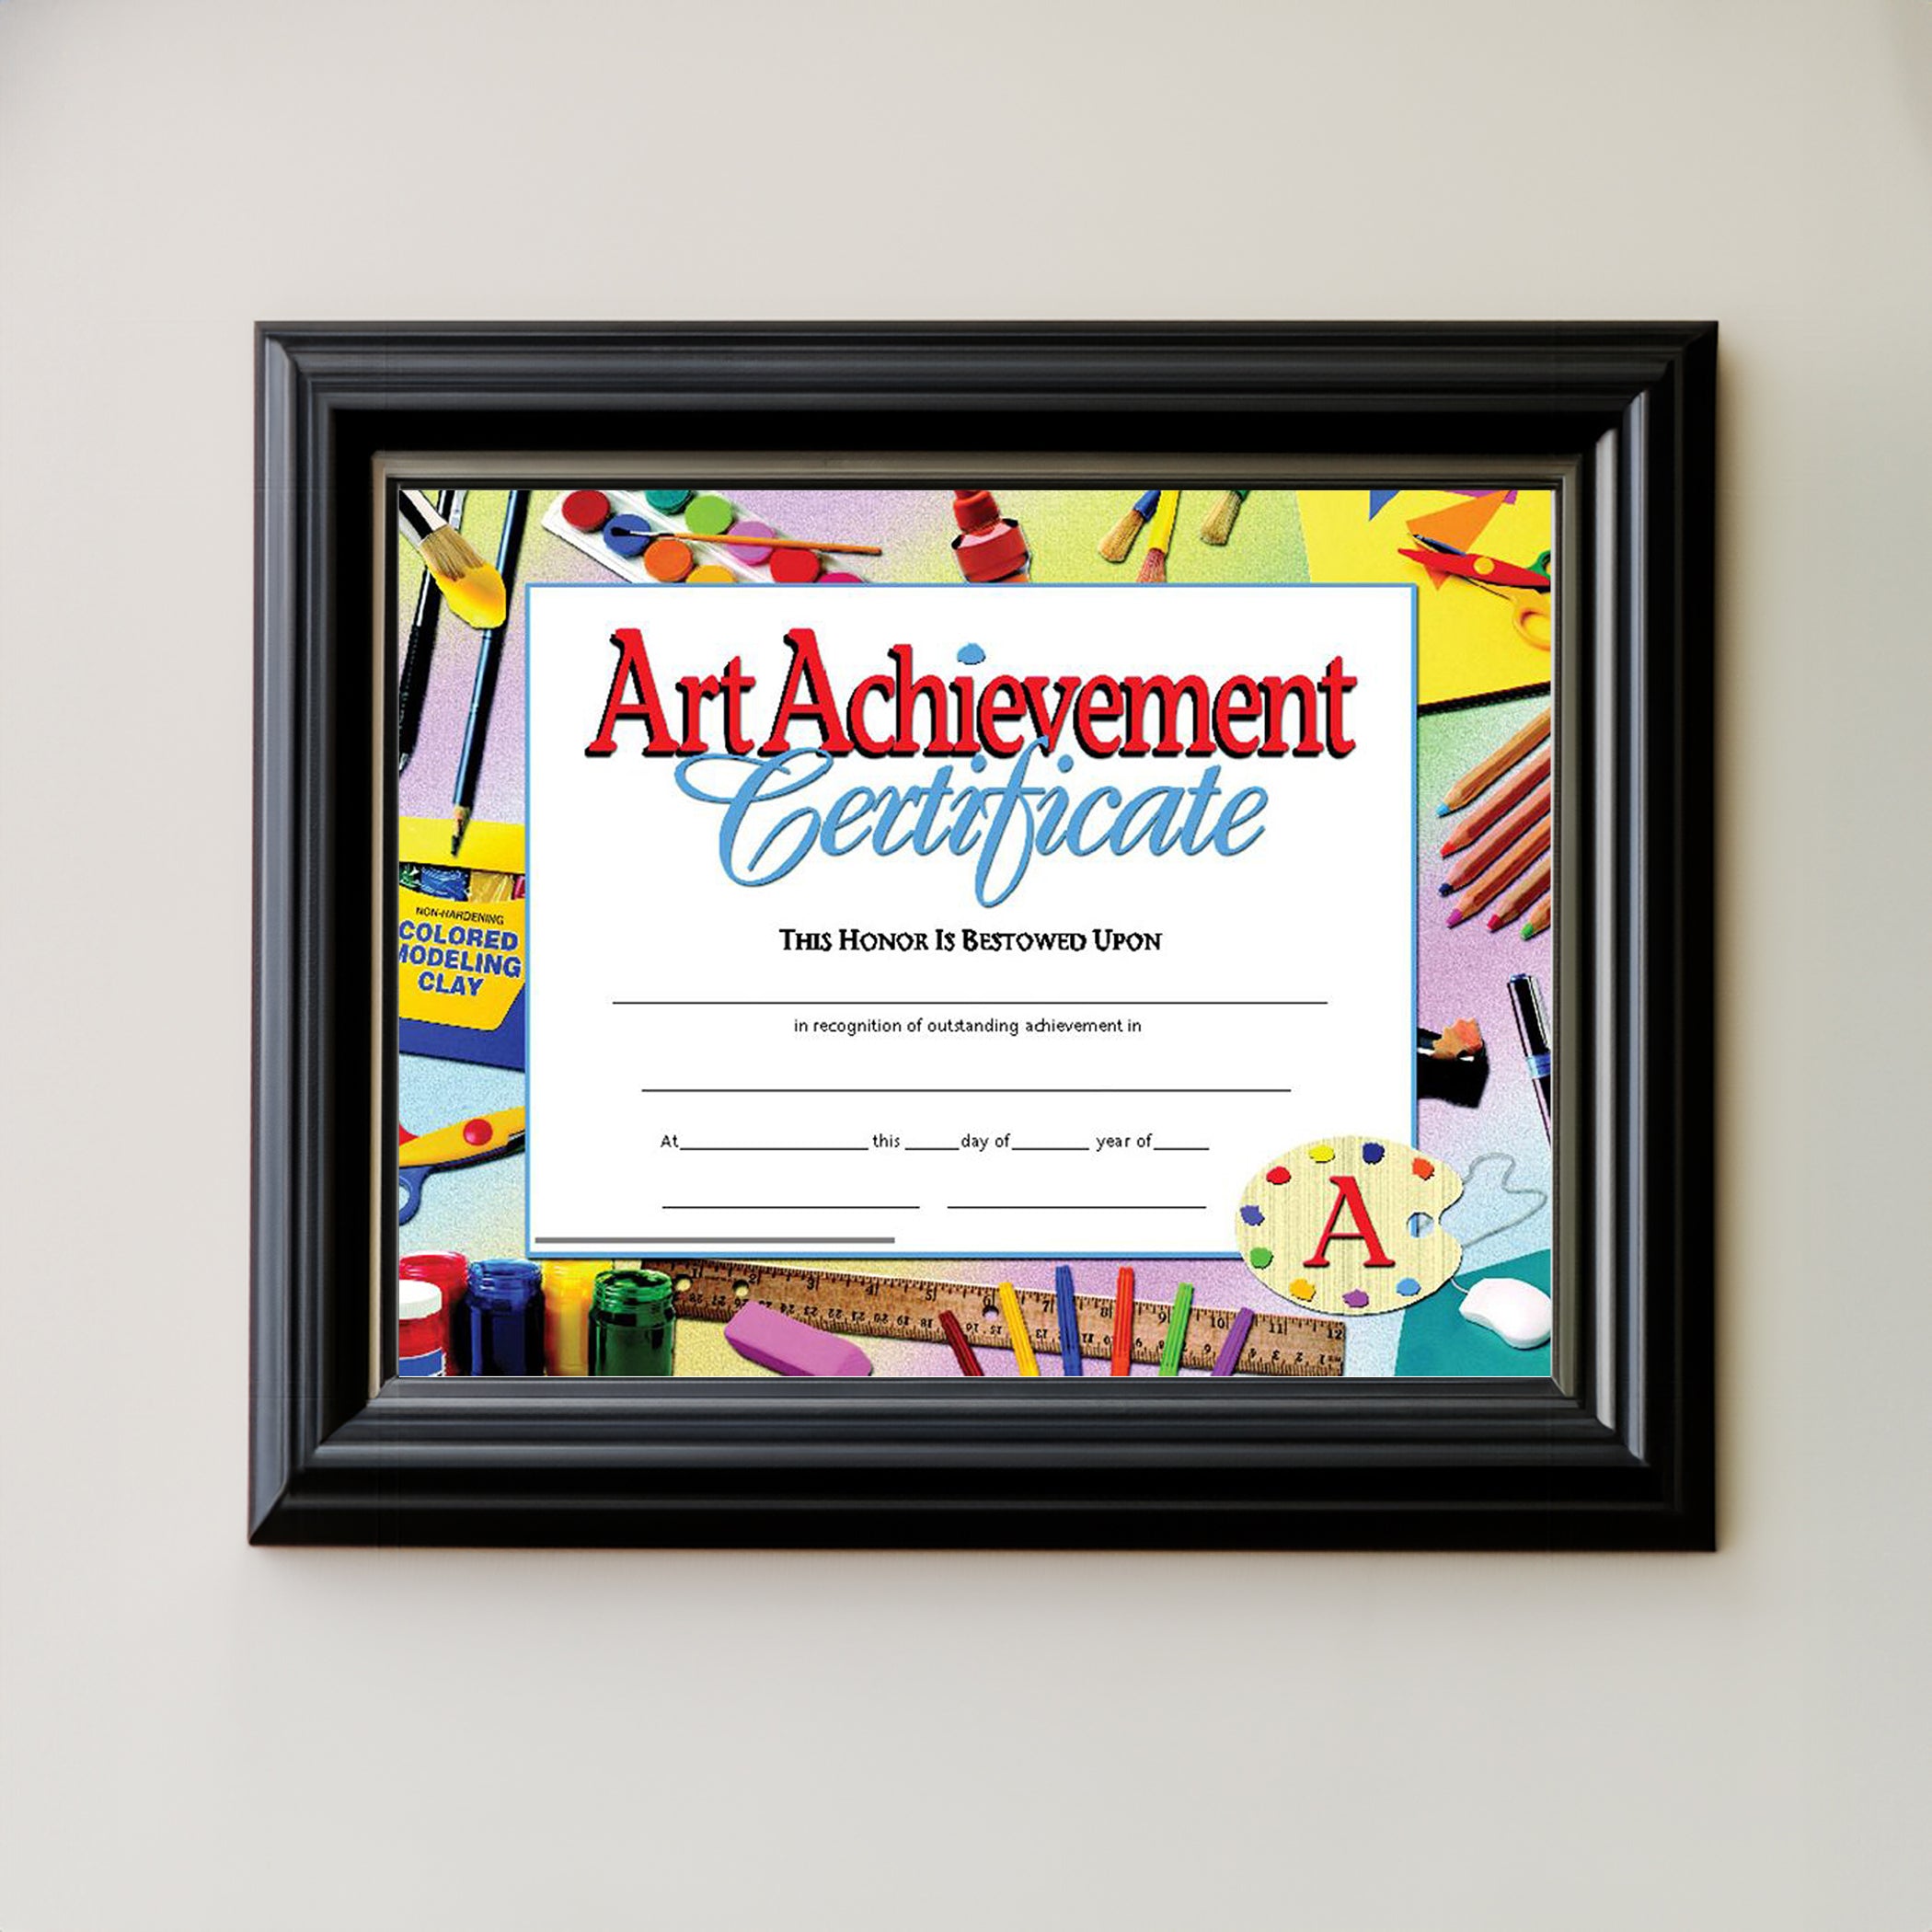 Art Achievement Certificate, 30 Per Pack, 3 Packs